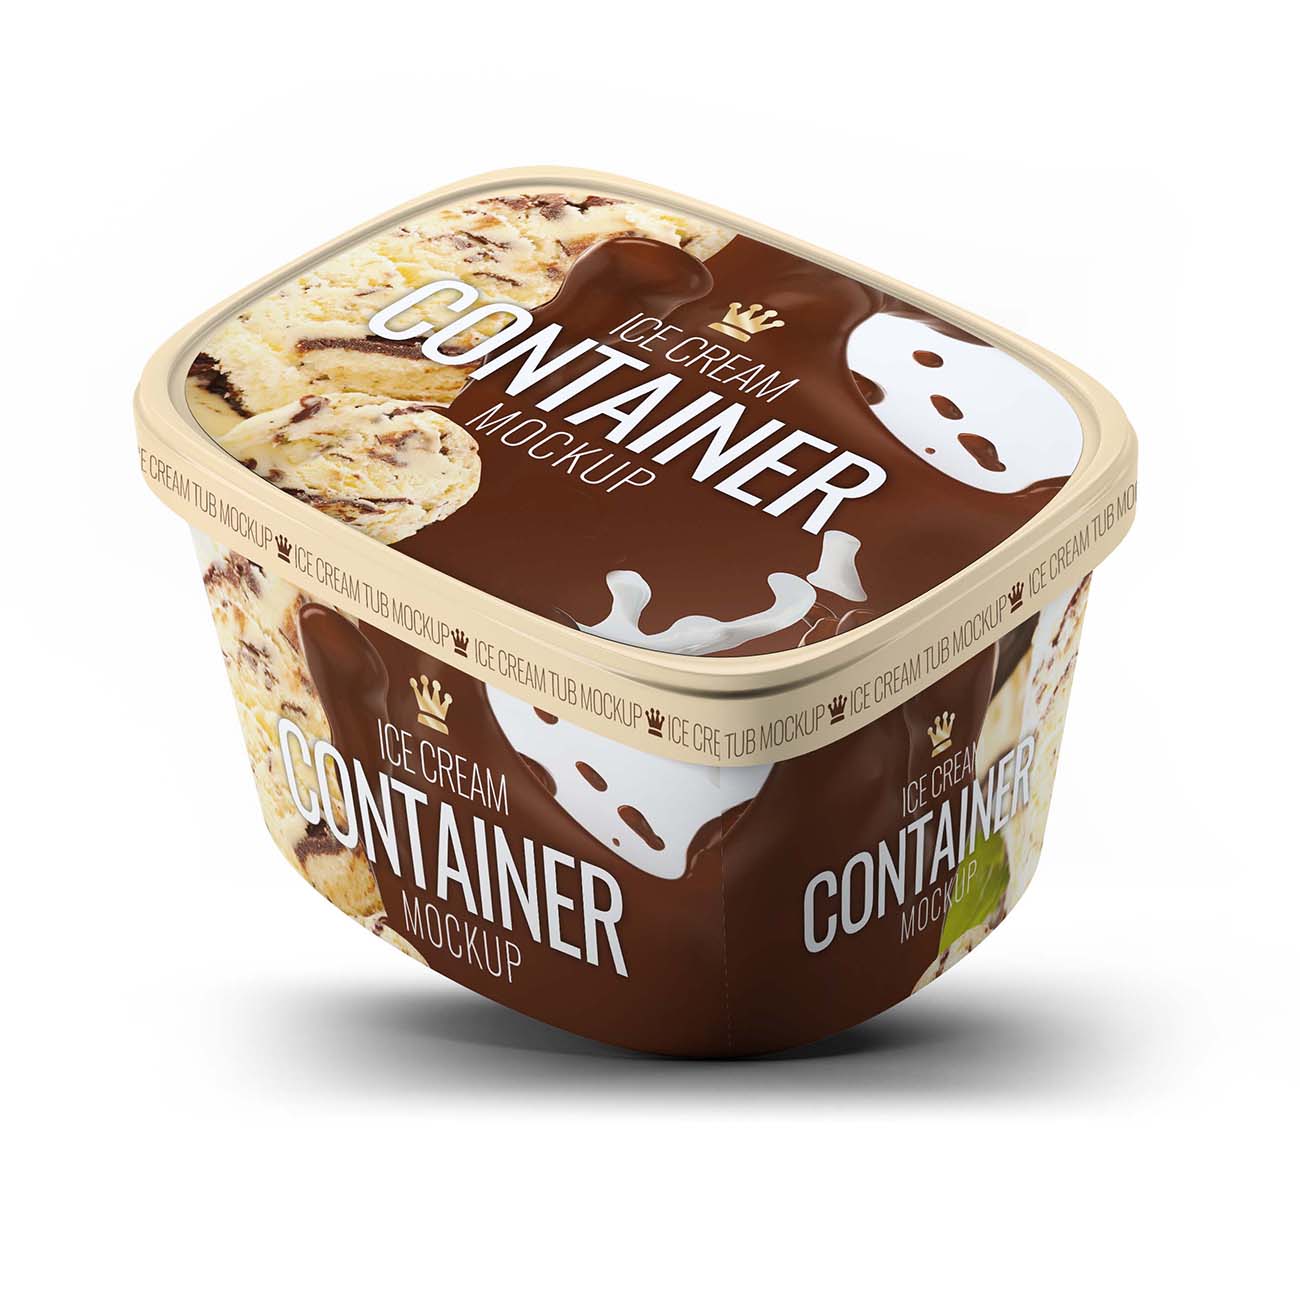 冰淇淋包装盒样机PSD源文件07 Ice Cream Container Mock-Up